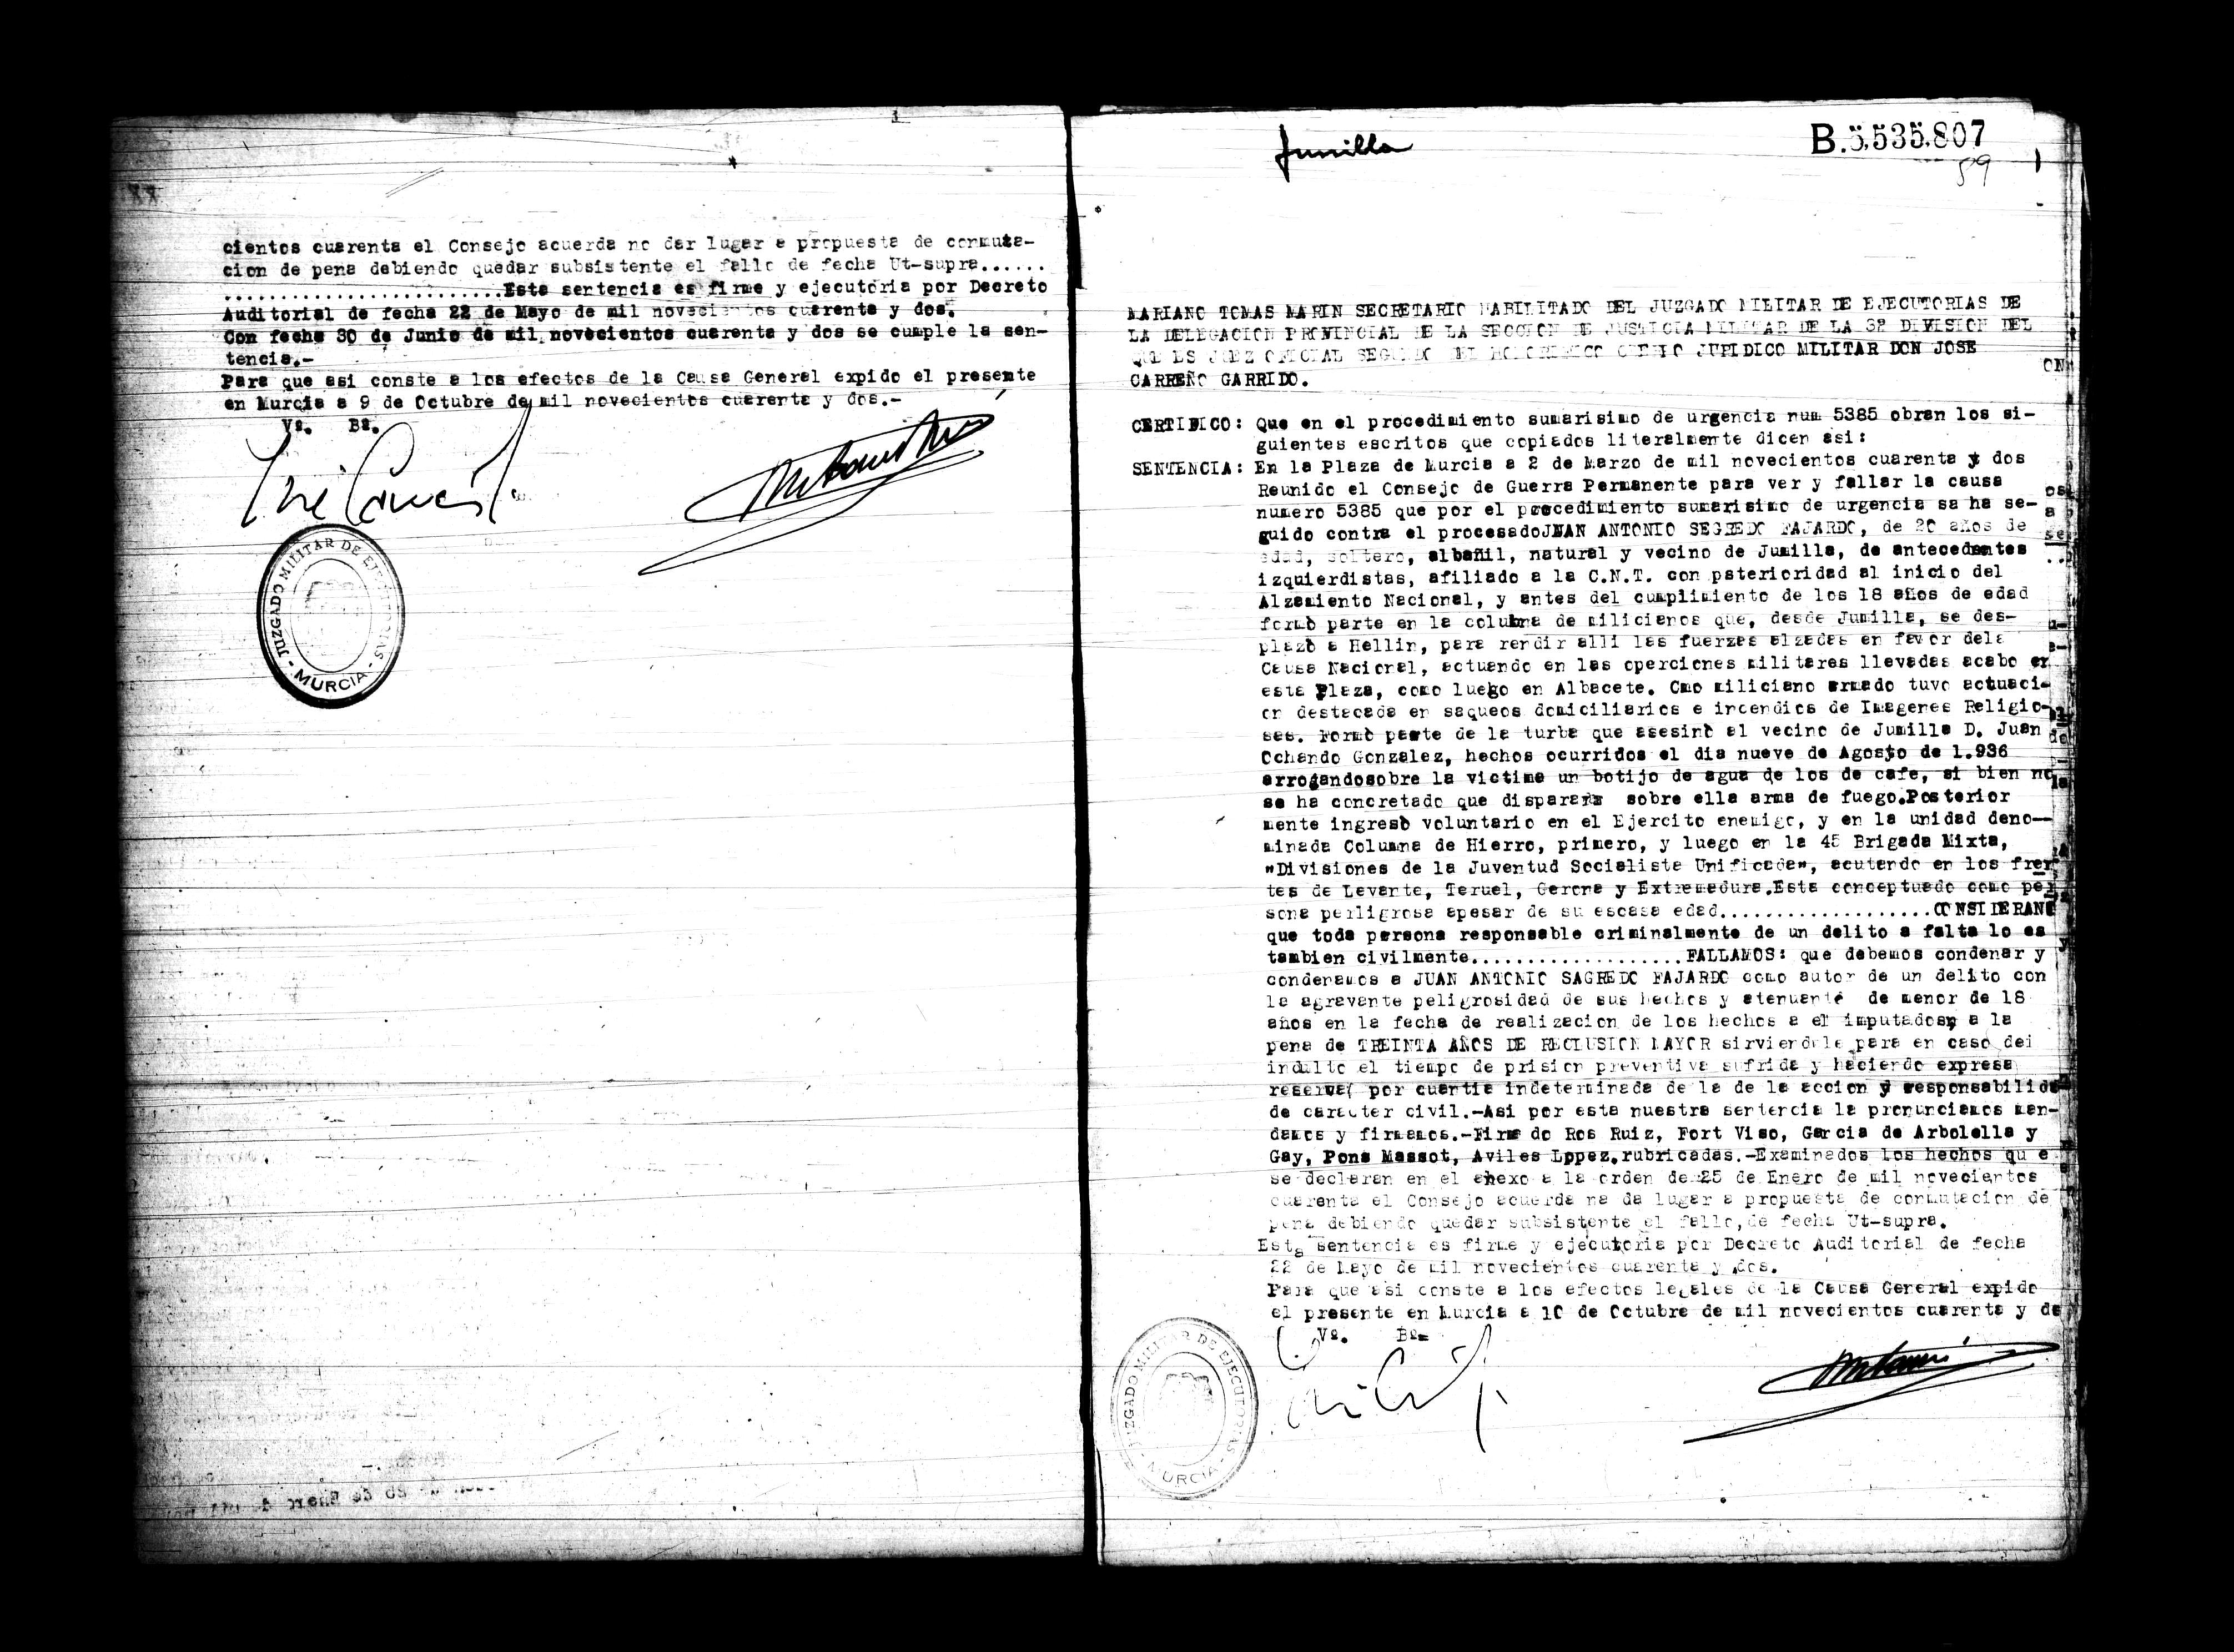 Certificado de la sentencia pronunciada contra Juan Antonio Sagredo Fajardo, causa 5385, el 2 de marzo de 1942 en Murcia.